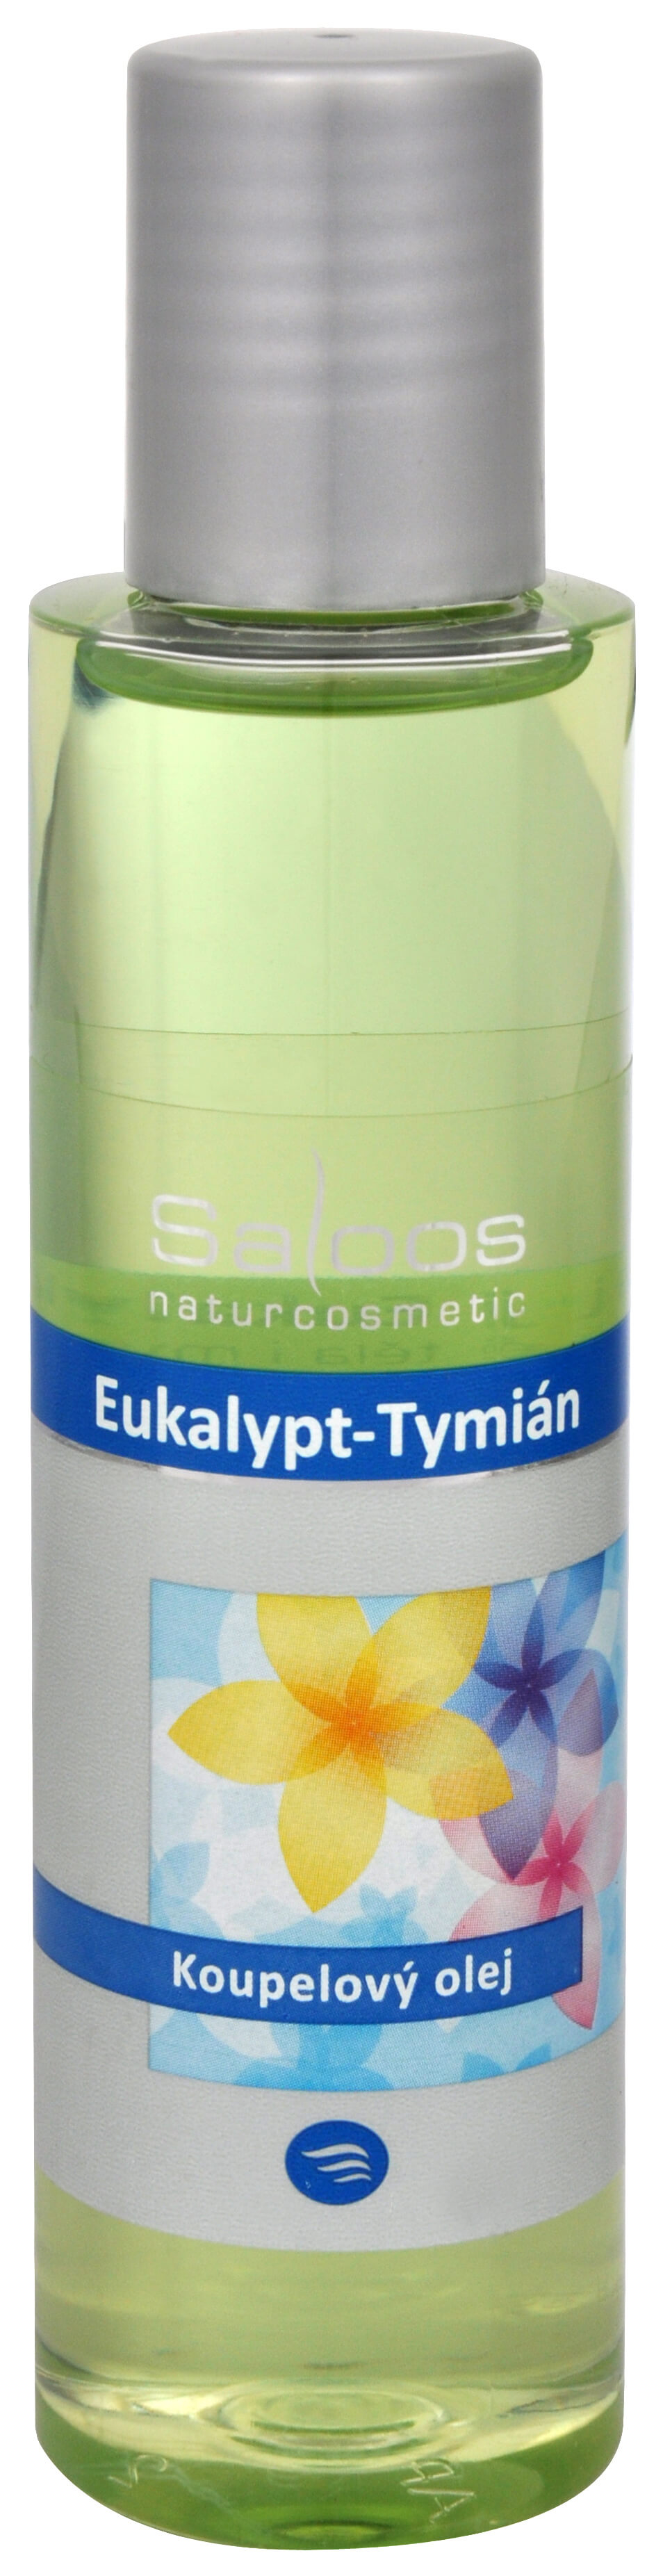 Zobrazit detail výrobku Saloos Koupelový olej - Eukalypt-Tymián 125 ml + 2 měsíce na vrácení zboží